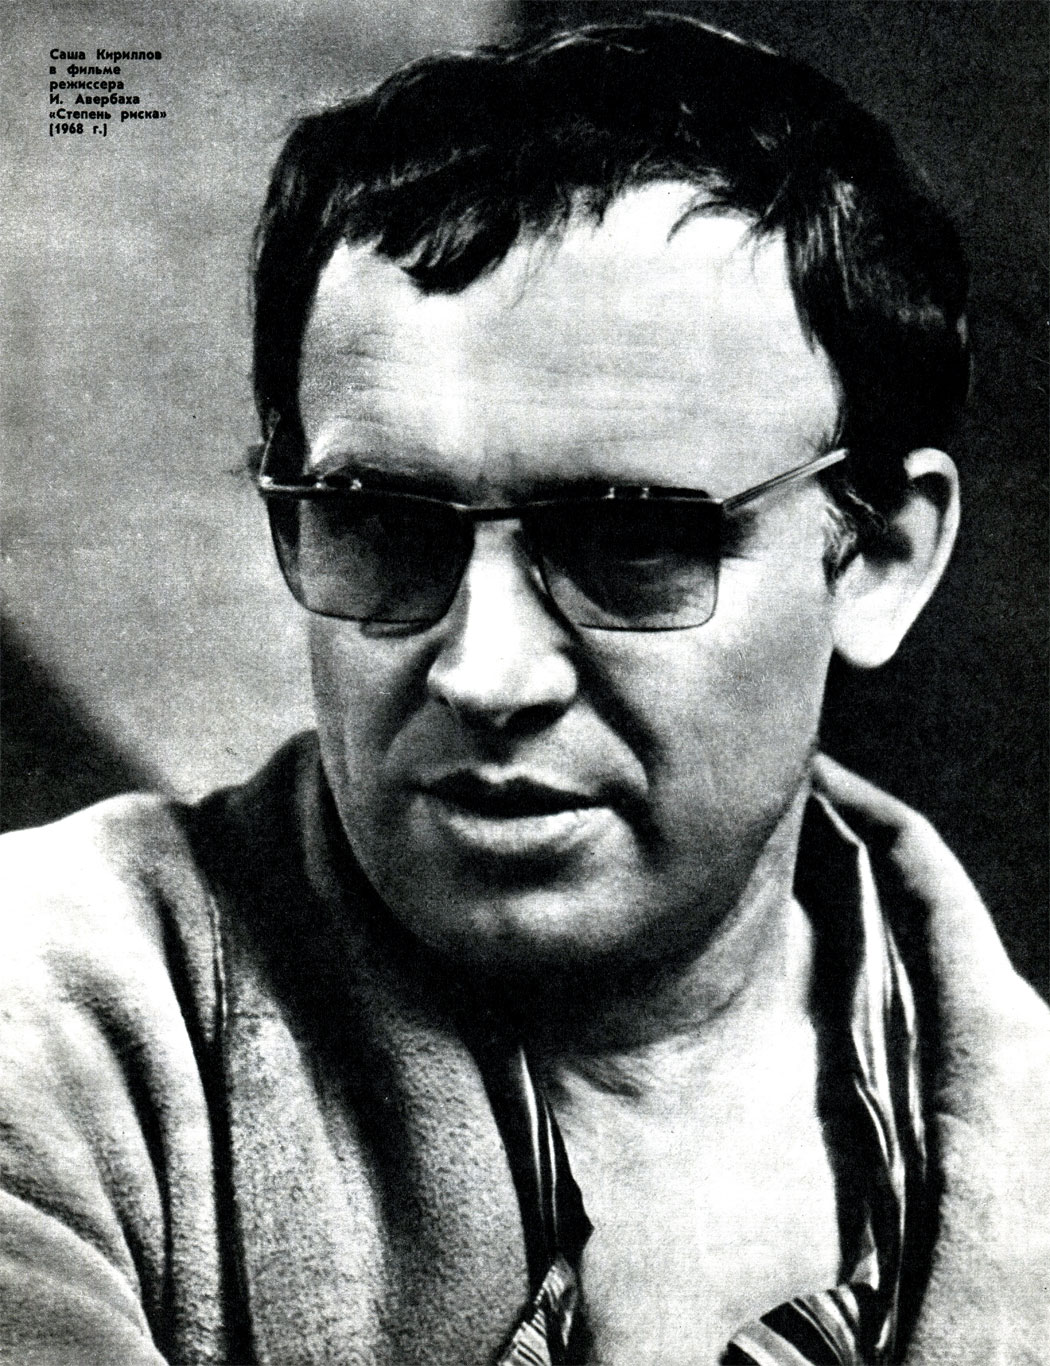      .  ' ' (1968 .)